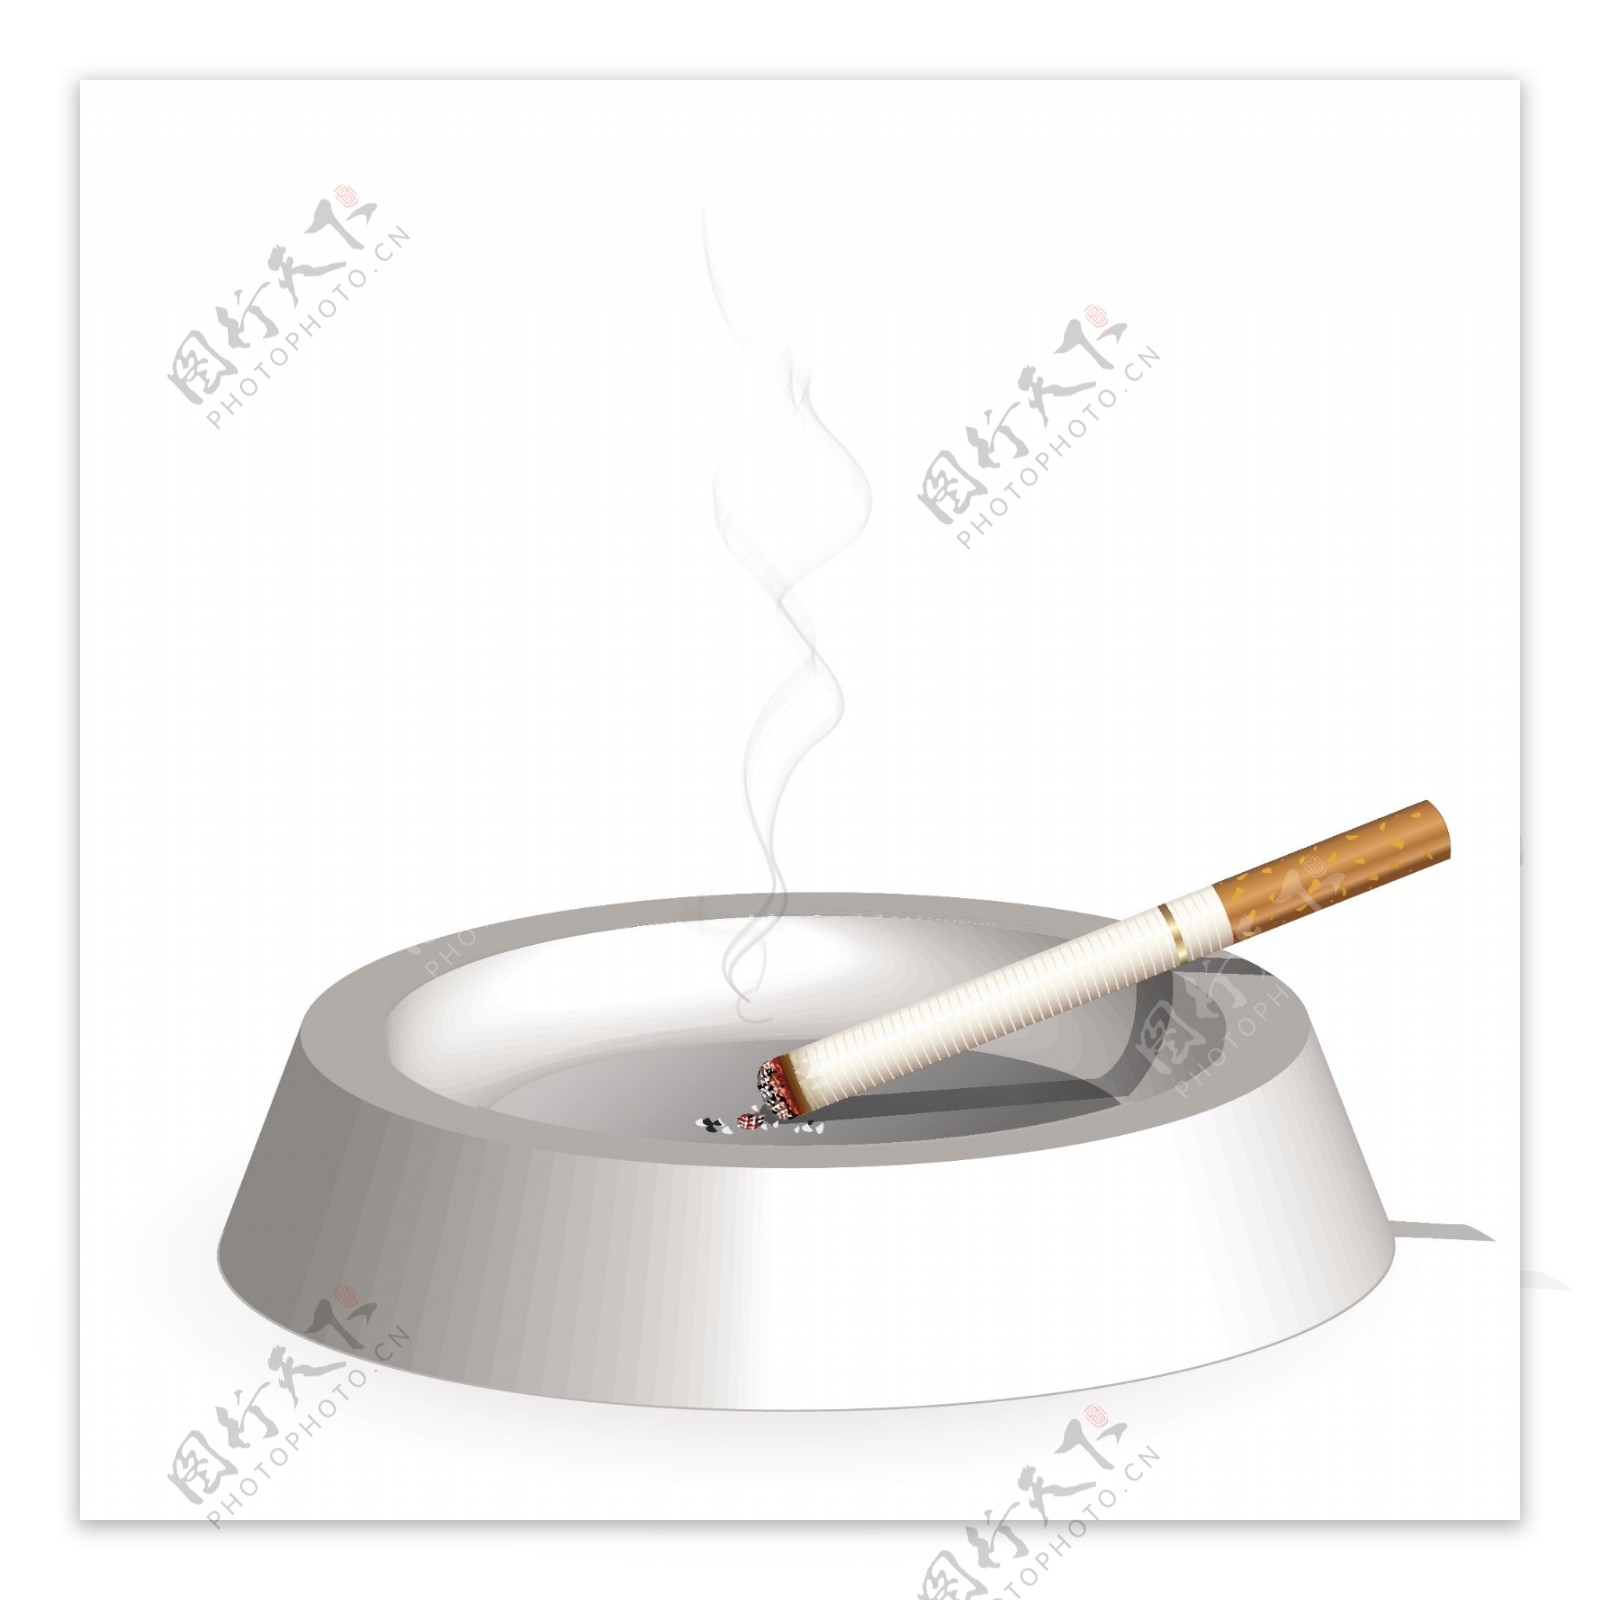 香烟主题矢量素材